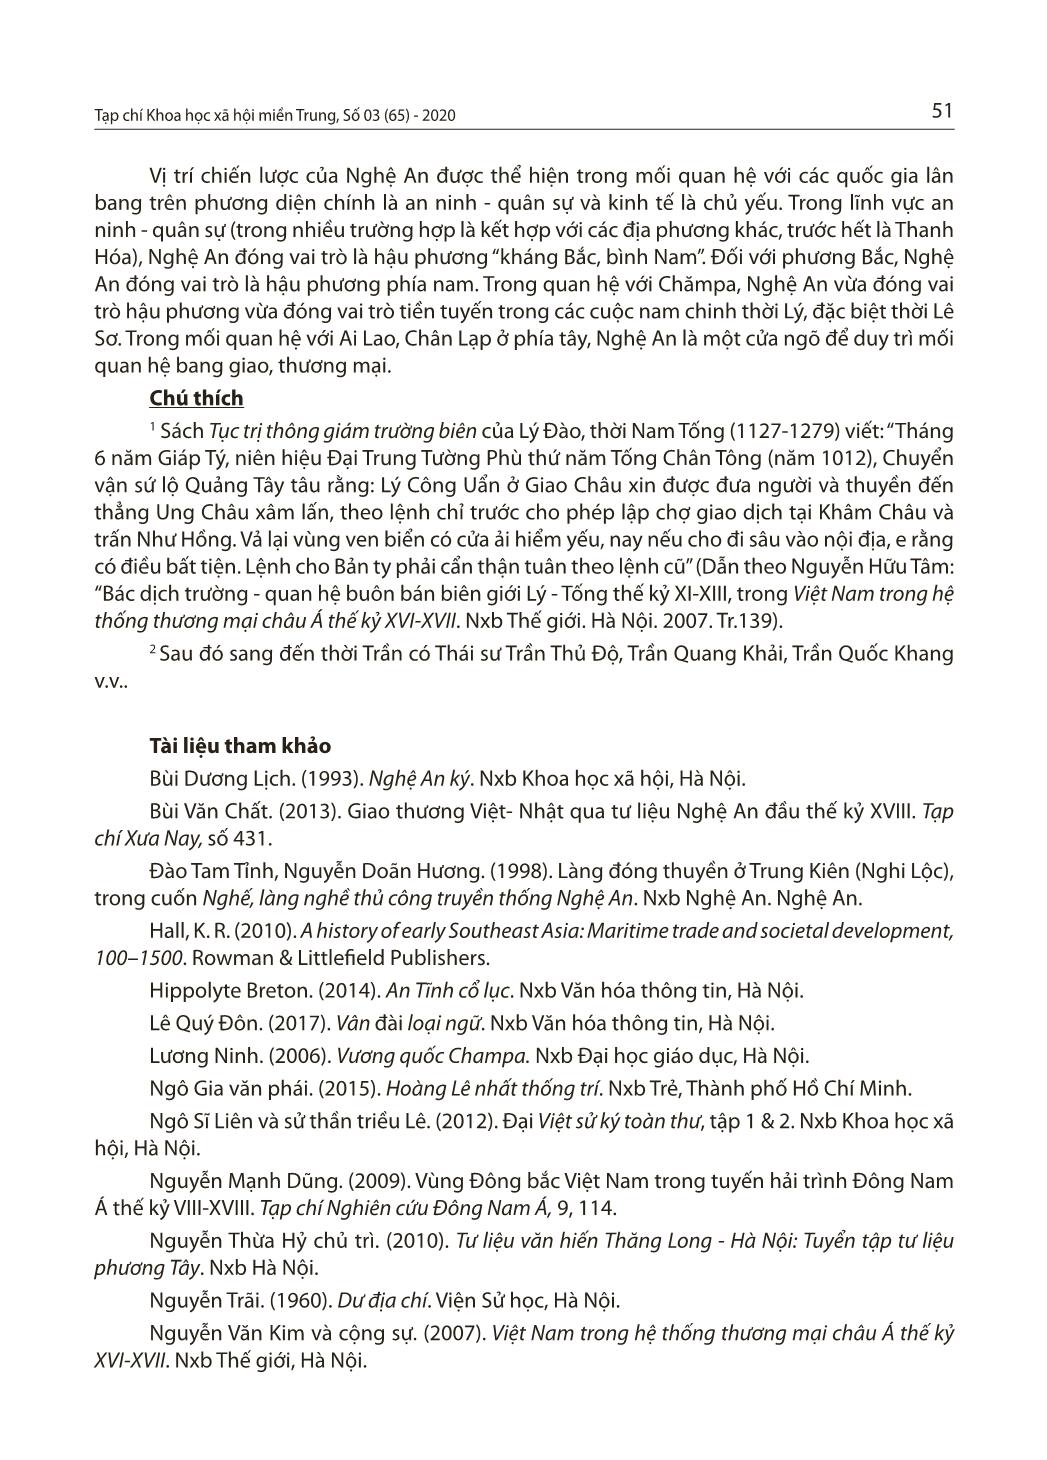 Nghệ An trong chiến lược đối ngoại của Đại Việt thời Lý - Trần - Lê (thế kỷ XI-XVIII) trang 9